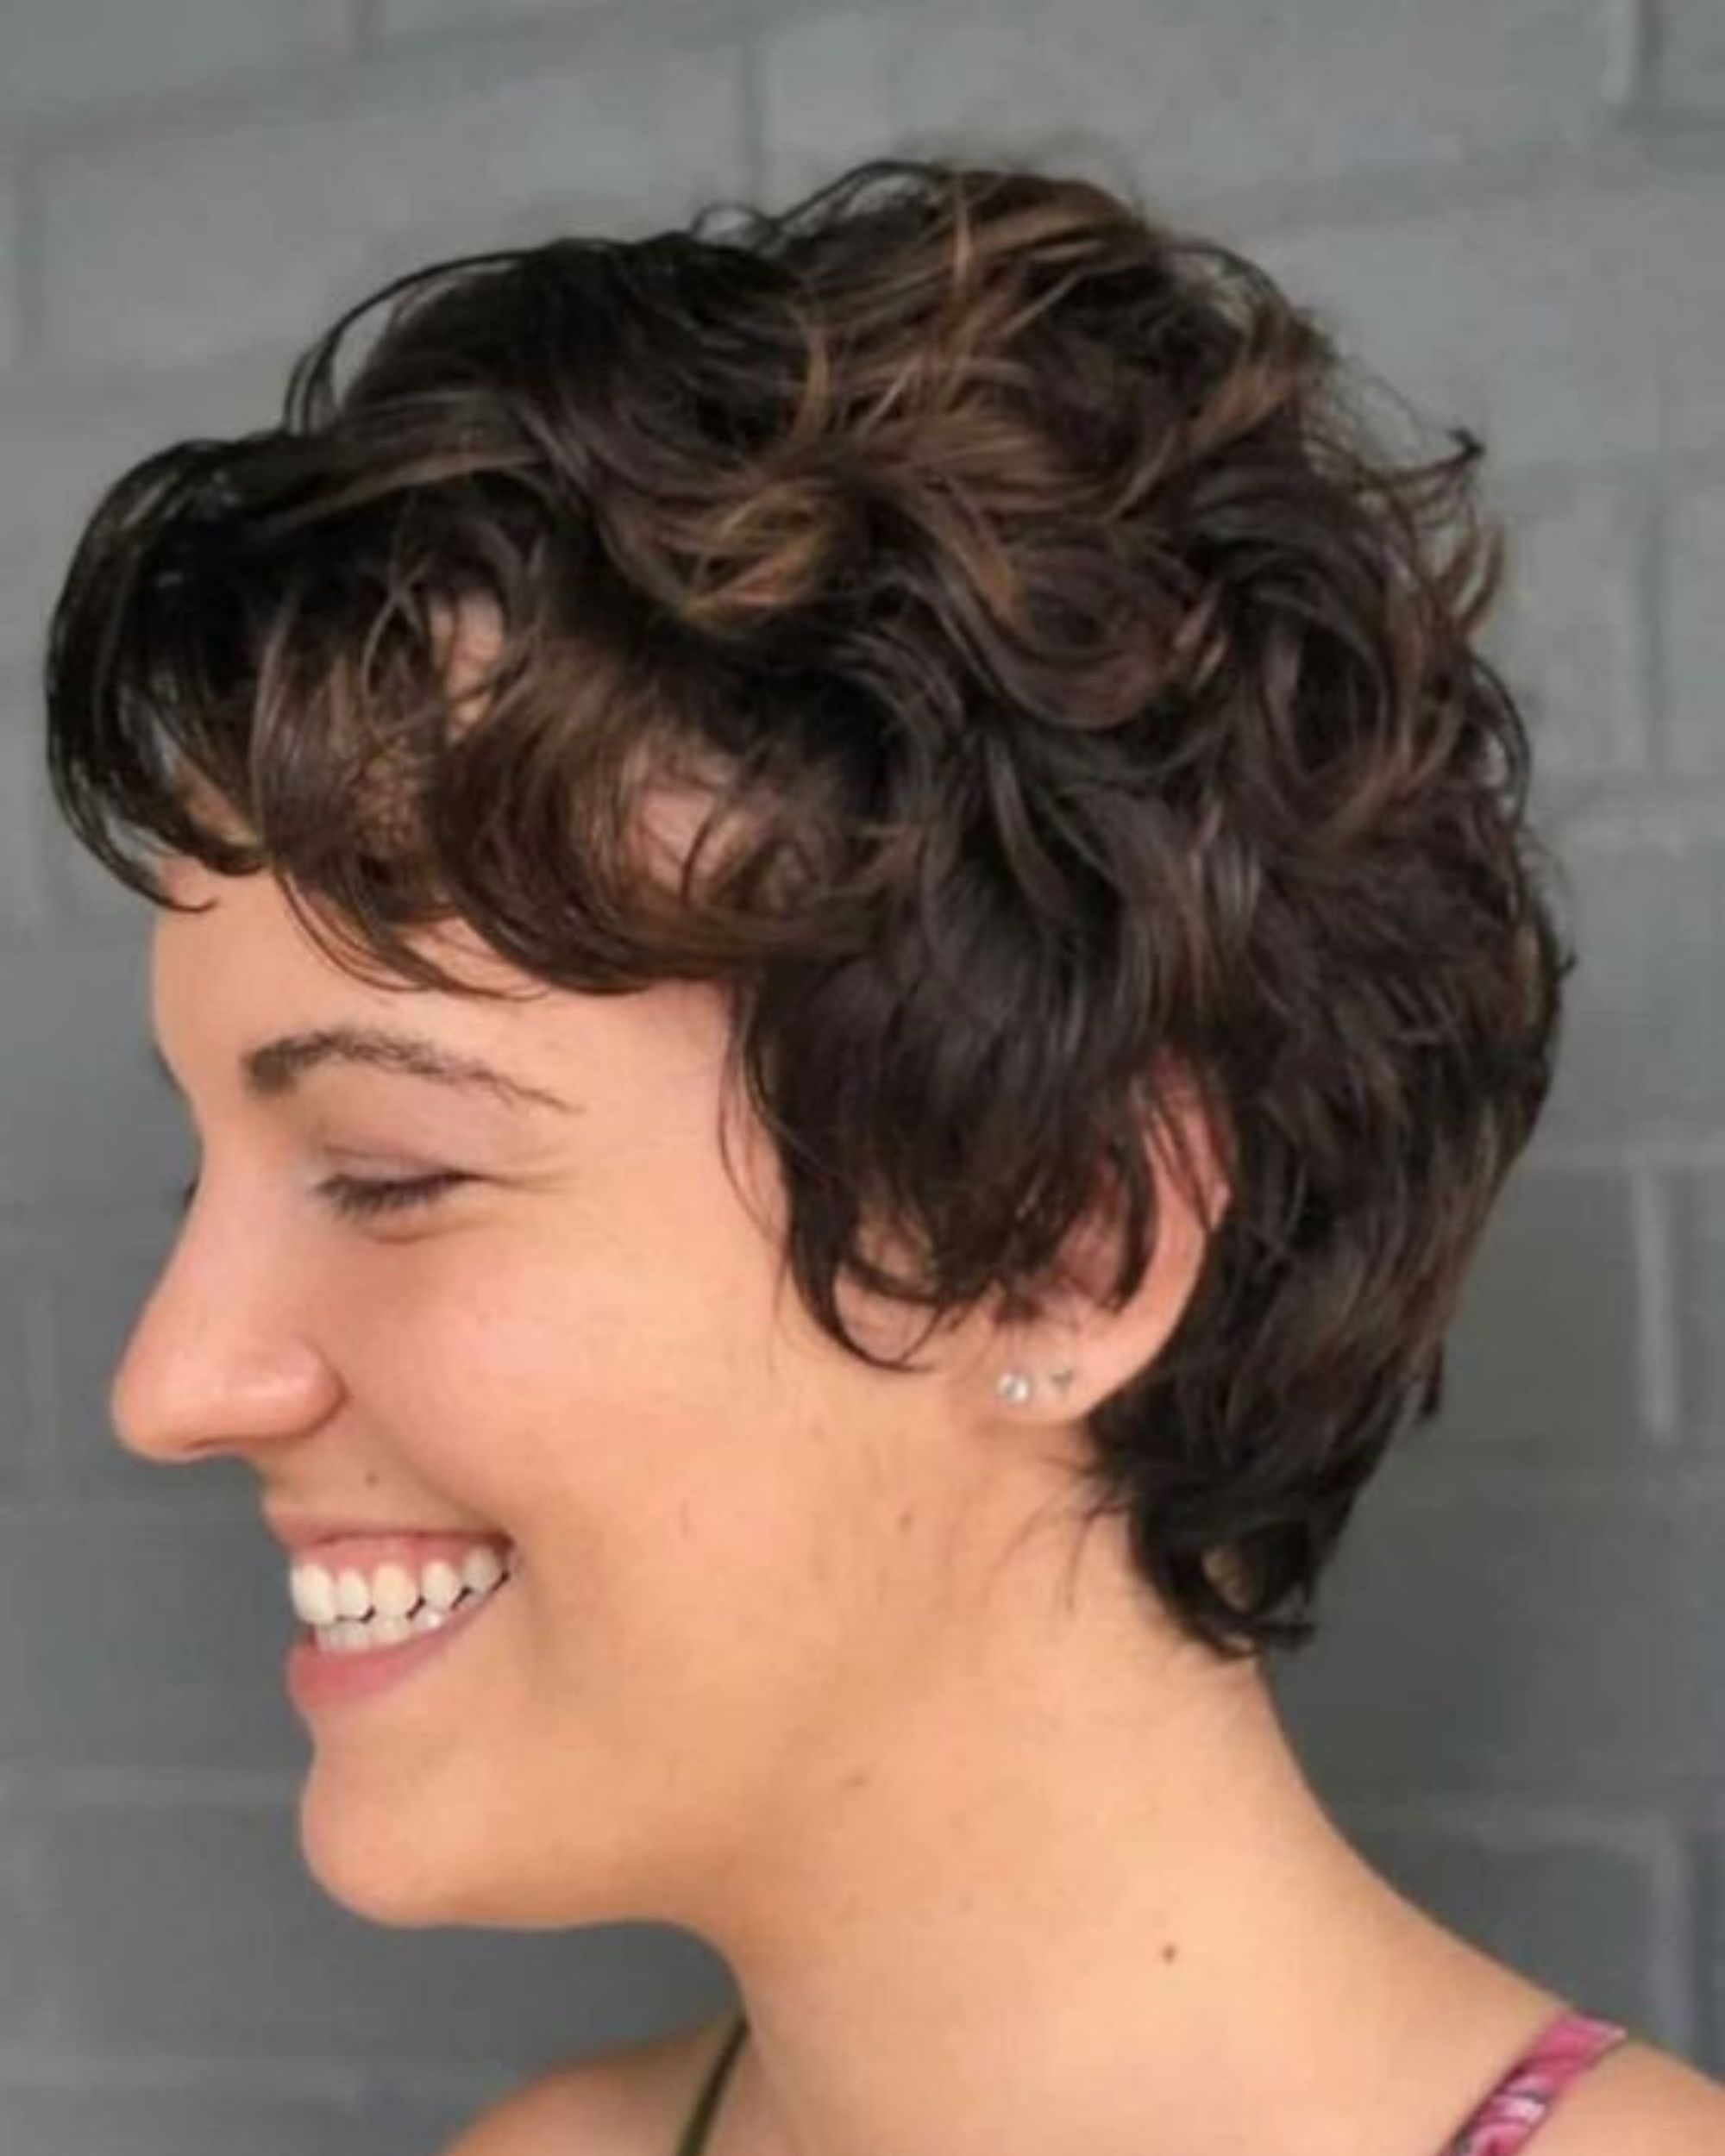 asymmetrical pixie cut curly hair